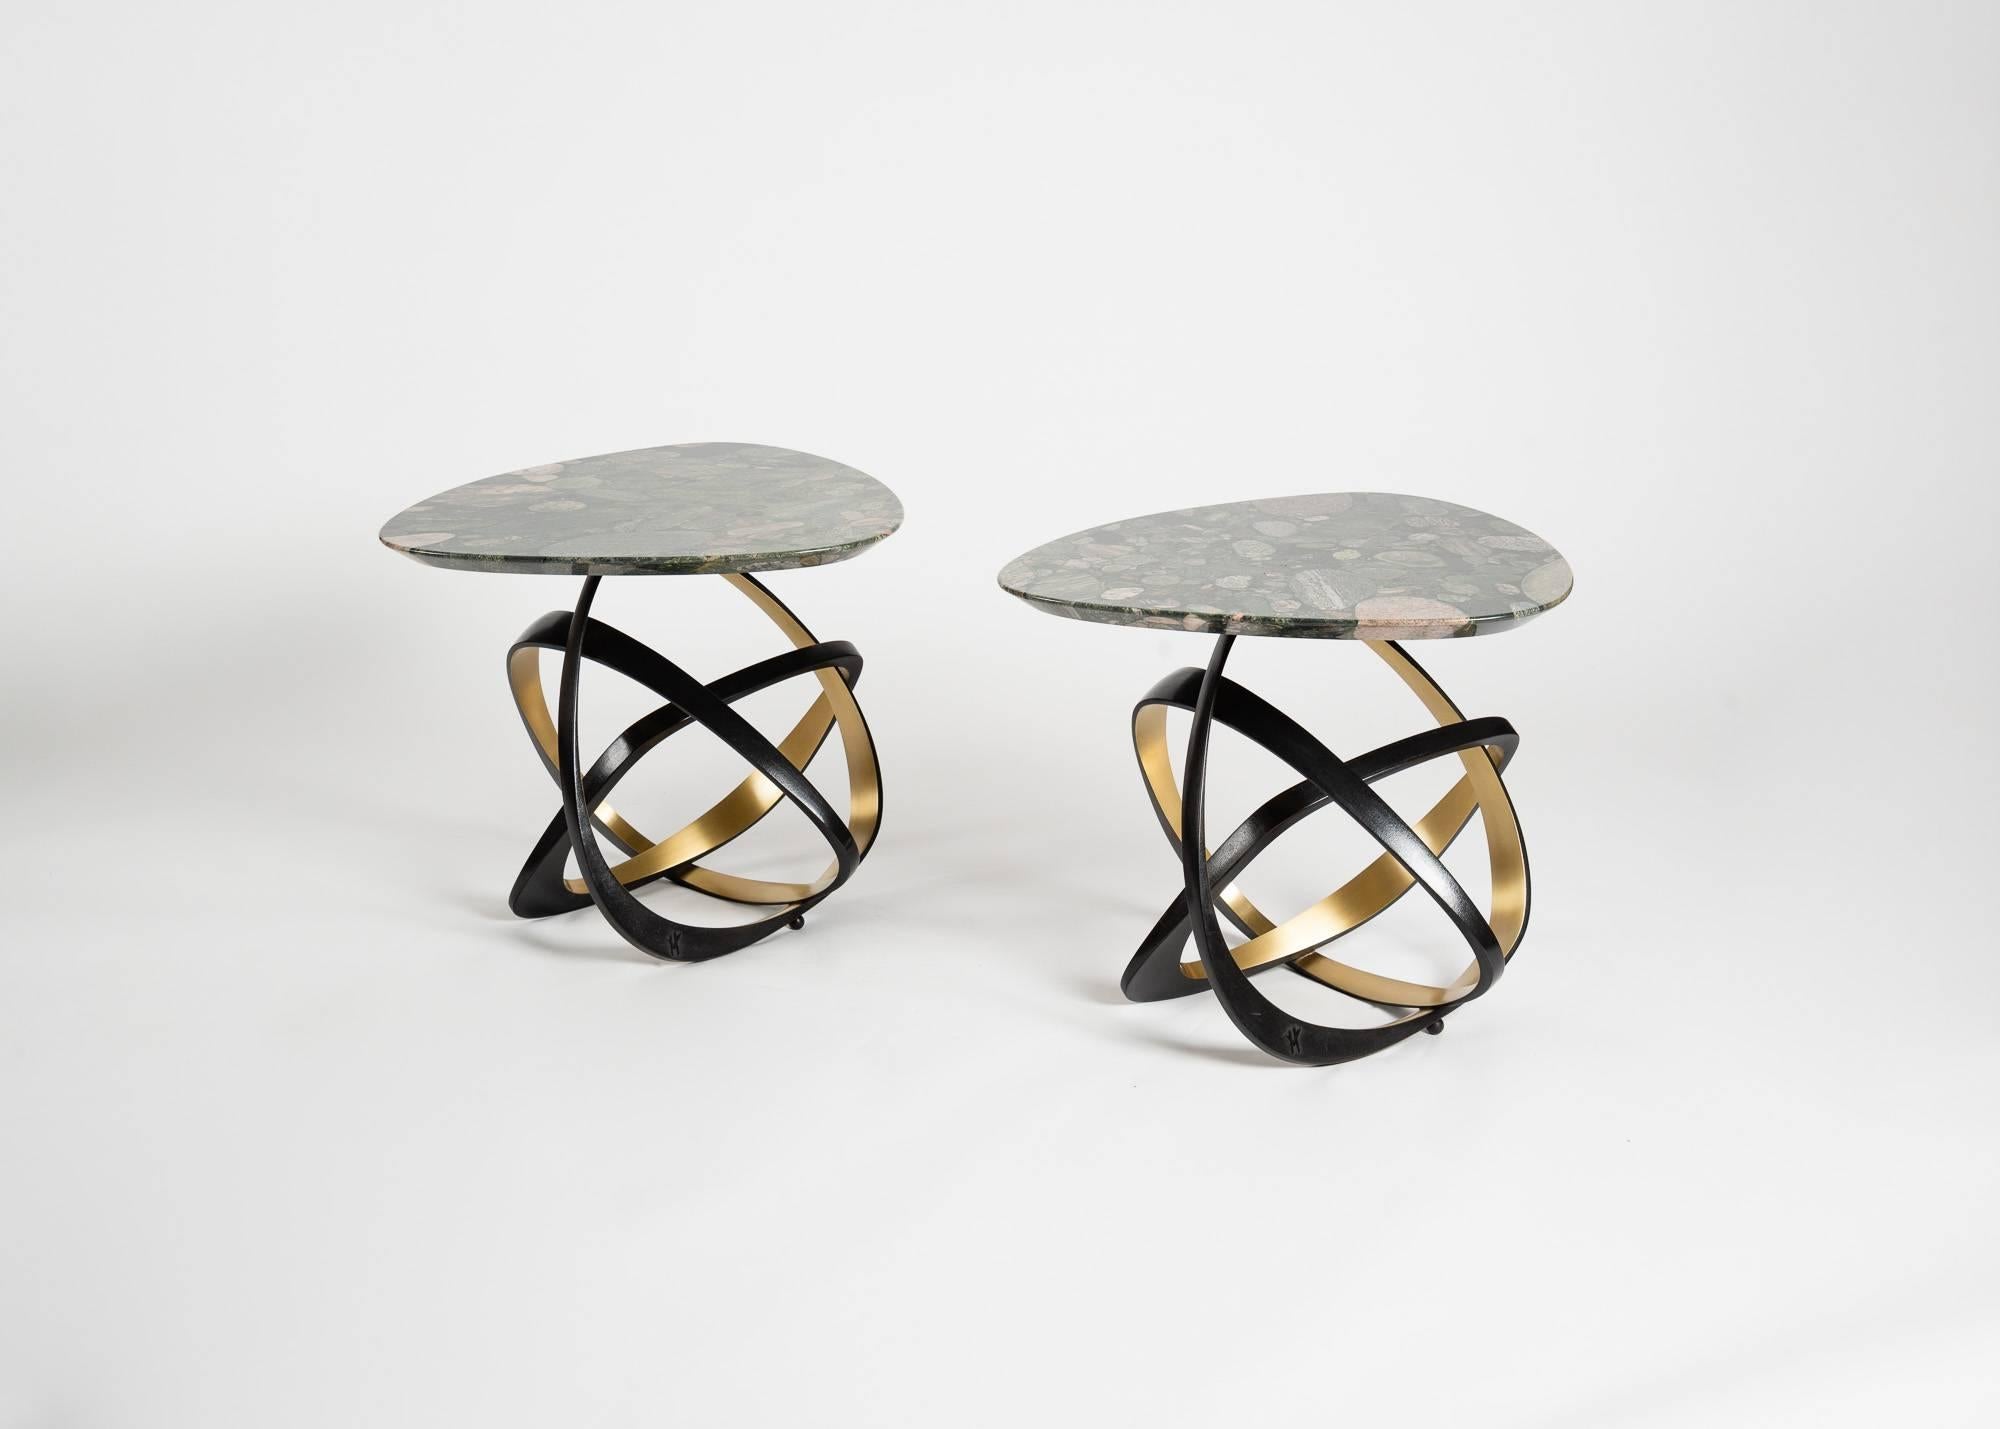 Dieser zeitgenössische Tisch besteht aus einer Marmorplatte mit quer verlaufenden Steinen und drei schrägen Bronzestützen, die jeweils mit einer vergoldeten Bronzefacette versehen sind. Diese dynamischen Metallringe sorgen für eine leichte, luftige